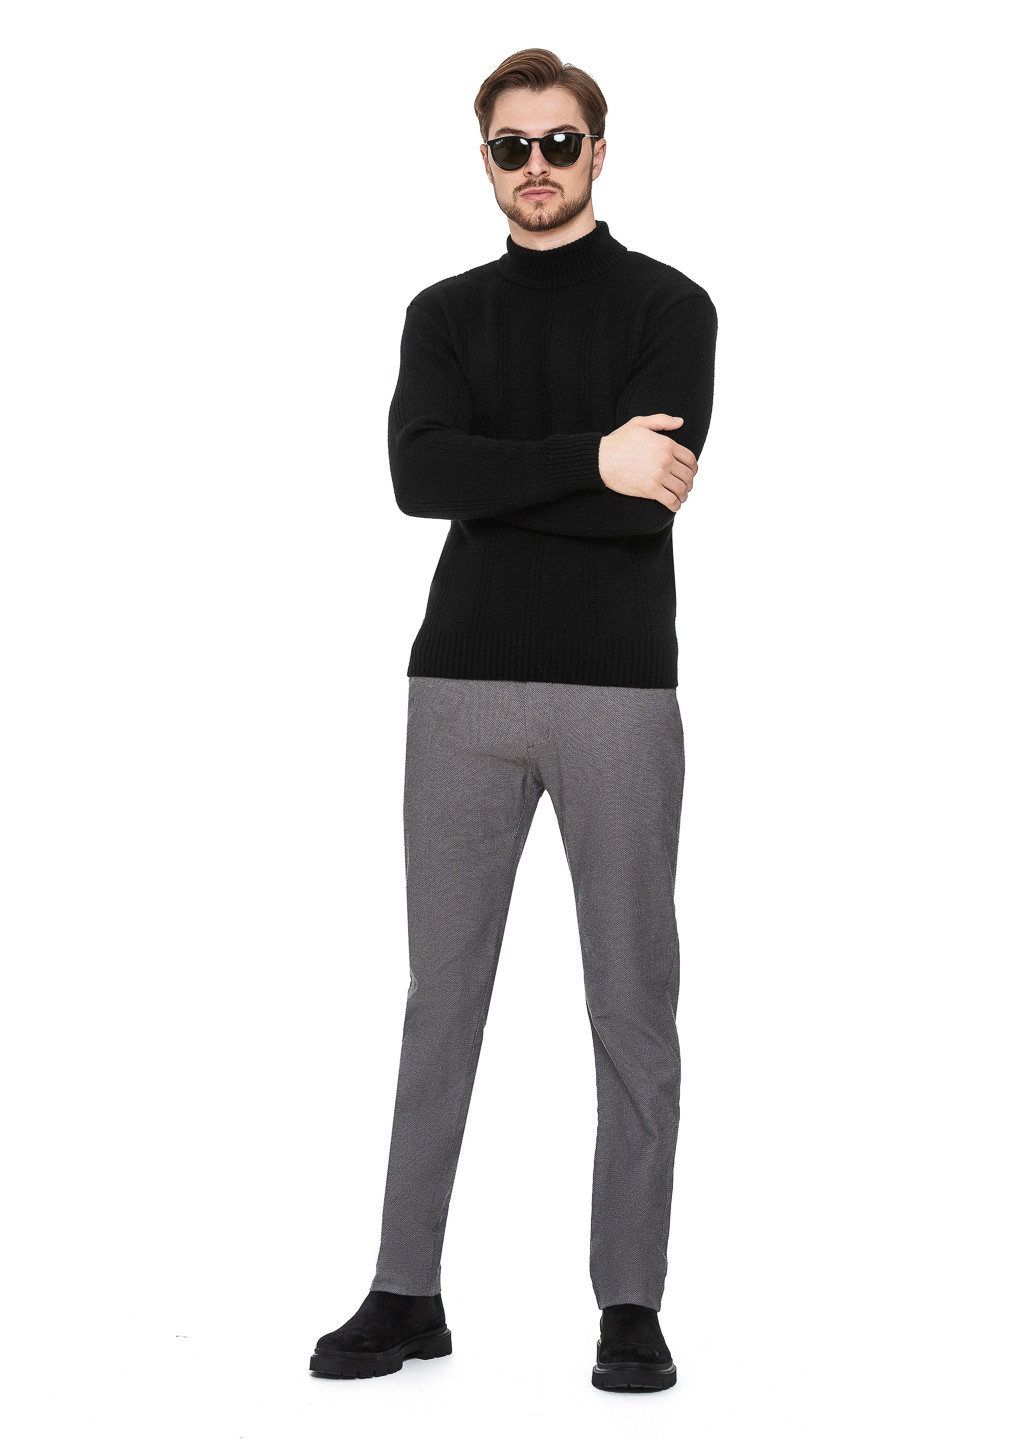 Черный свитер с воротником стойка «авиатор» SVTR